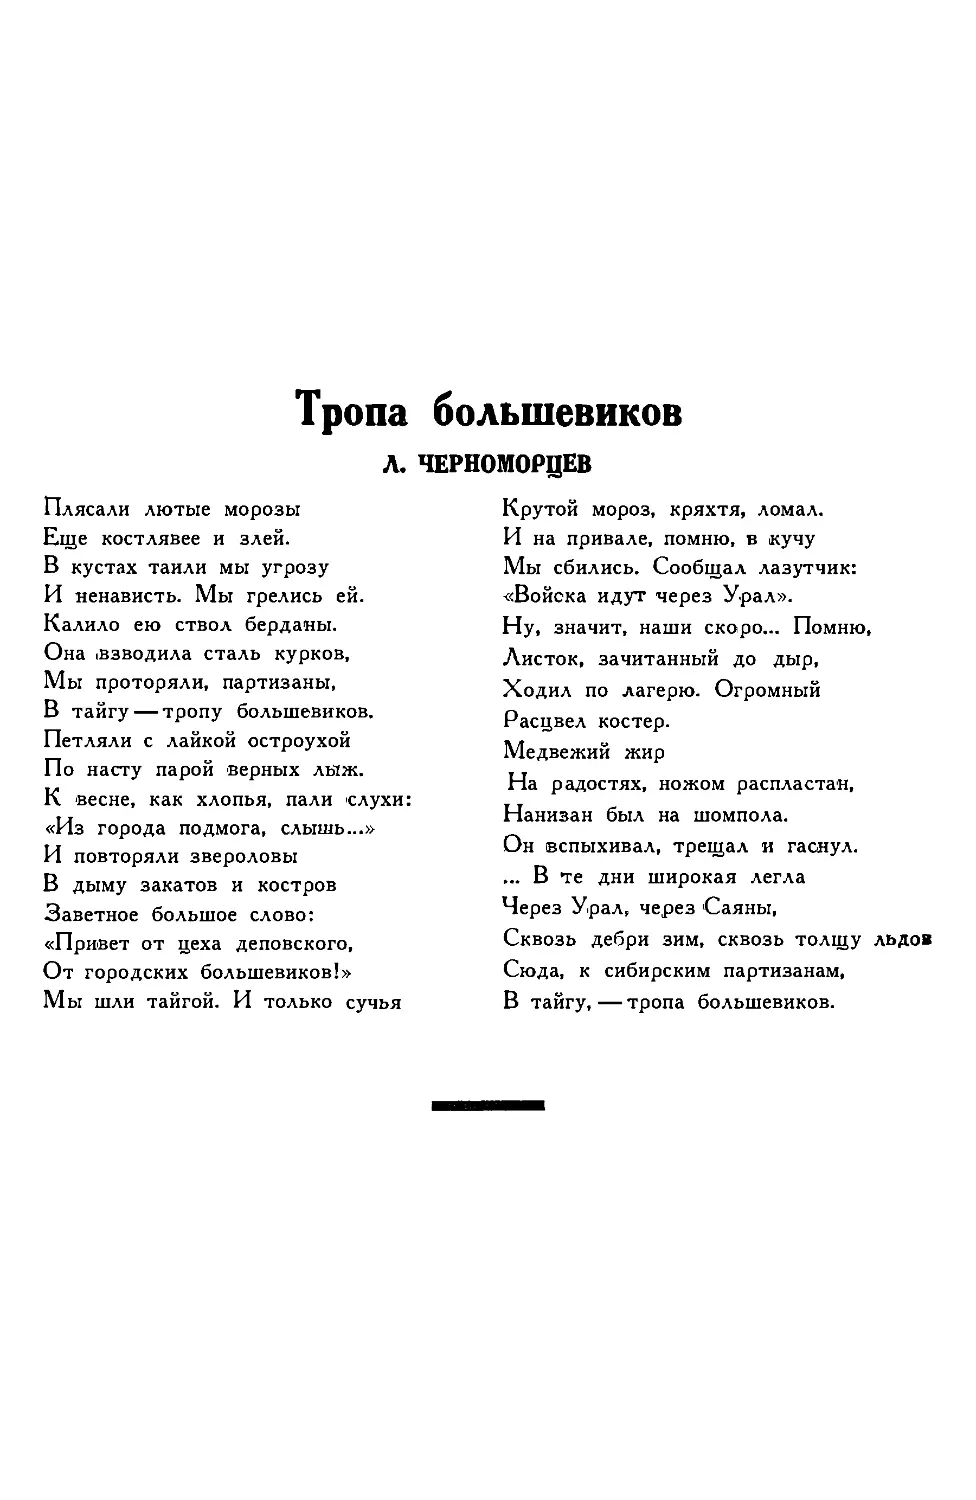 6. Л. ЧЕРНОМОРЦЕВ. — Тропа большевиков, стихотворение